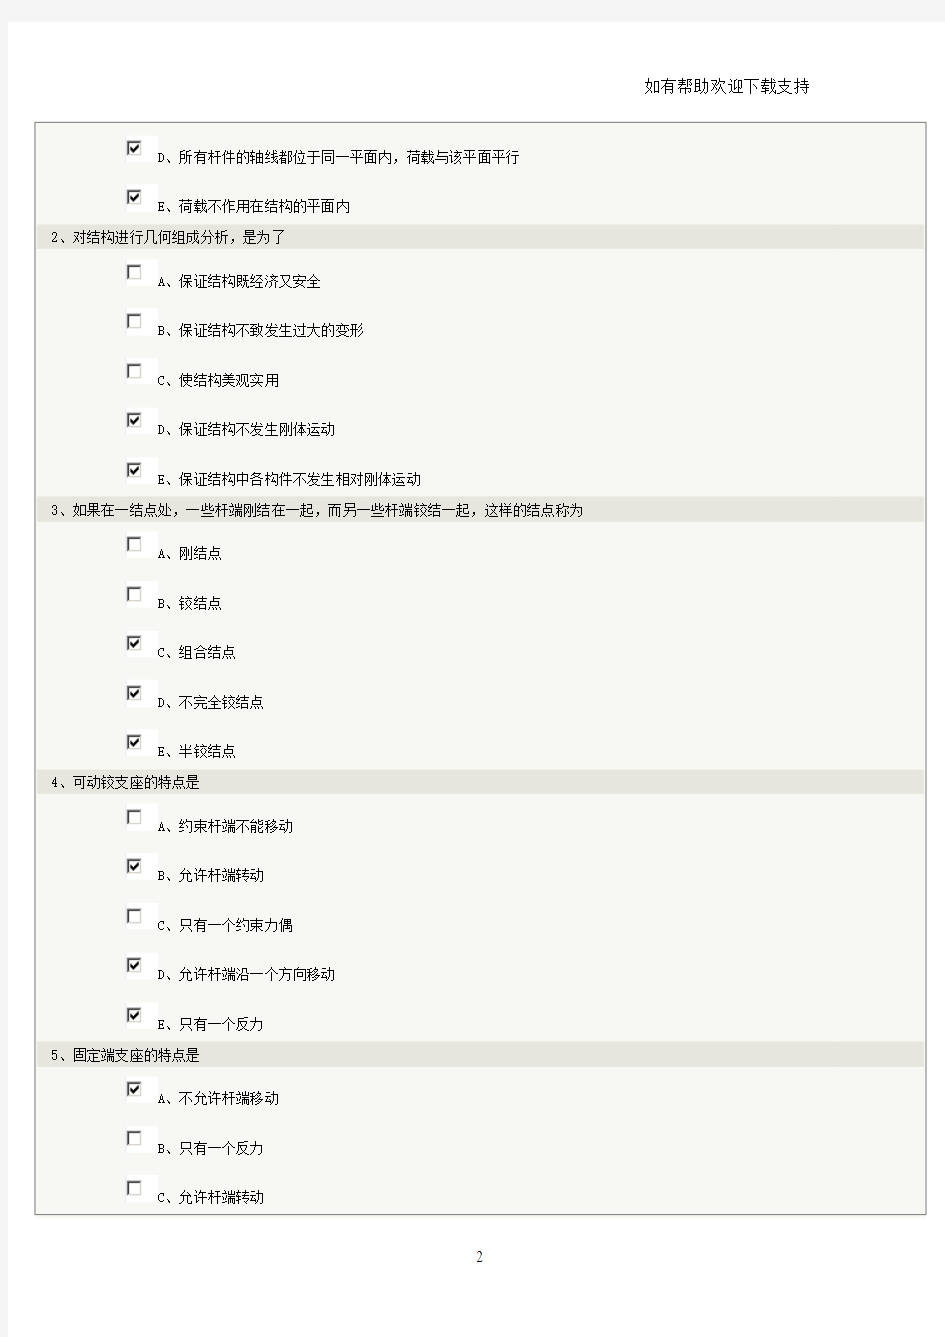 郑州大学远程教育结构力学在线测试章答案